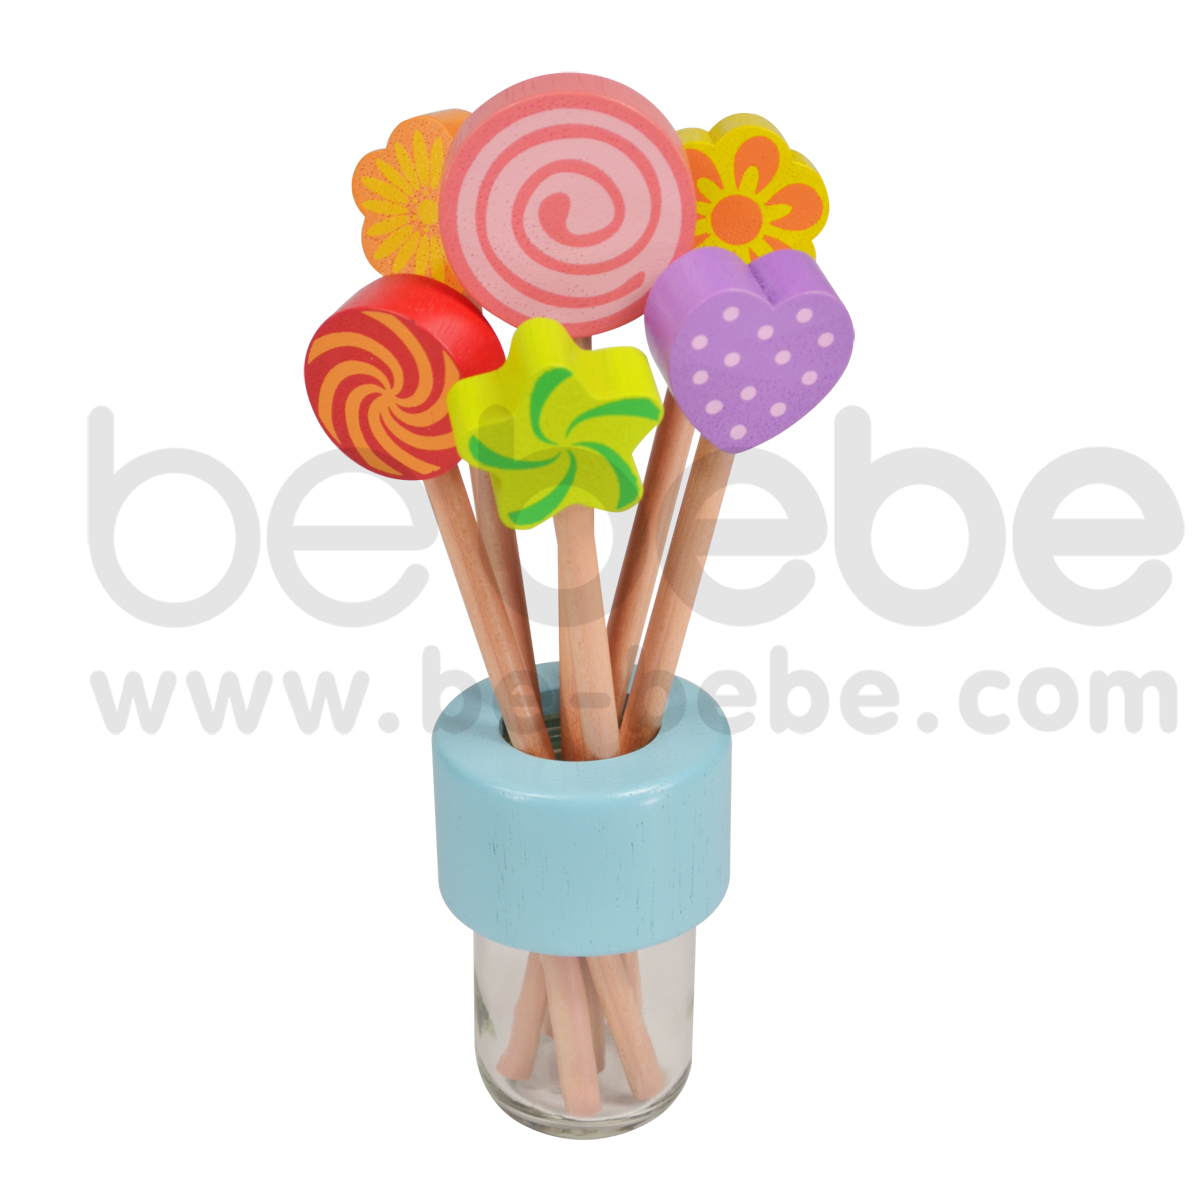 bebebe : Pencil-S-Turbo Circle/Pink